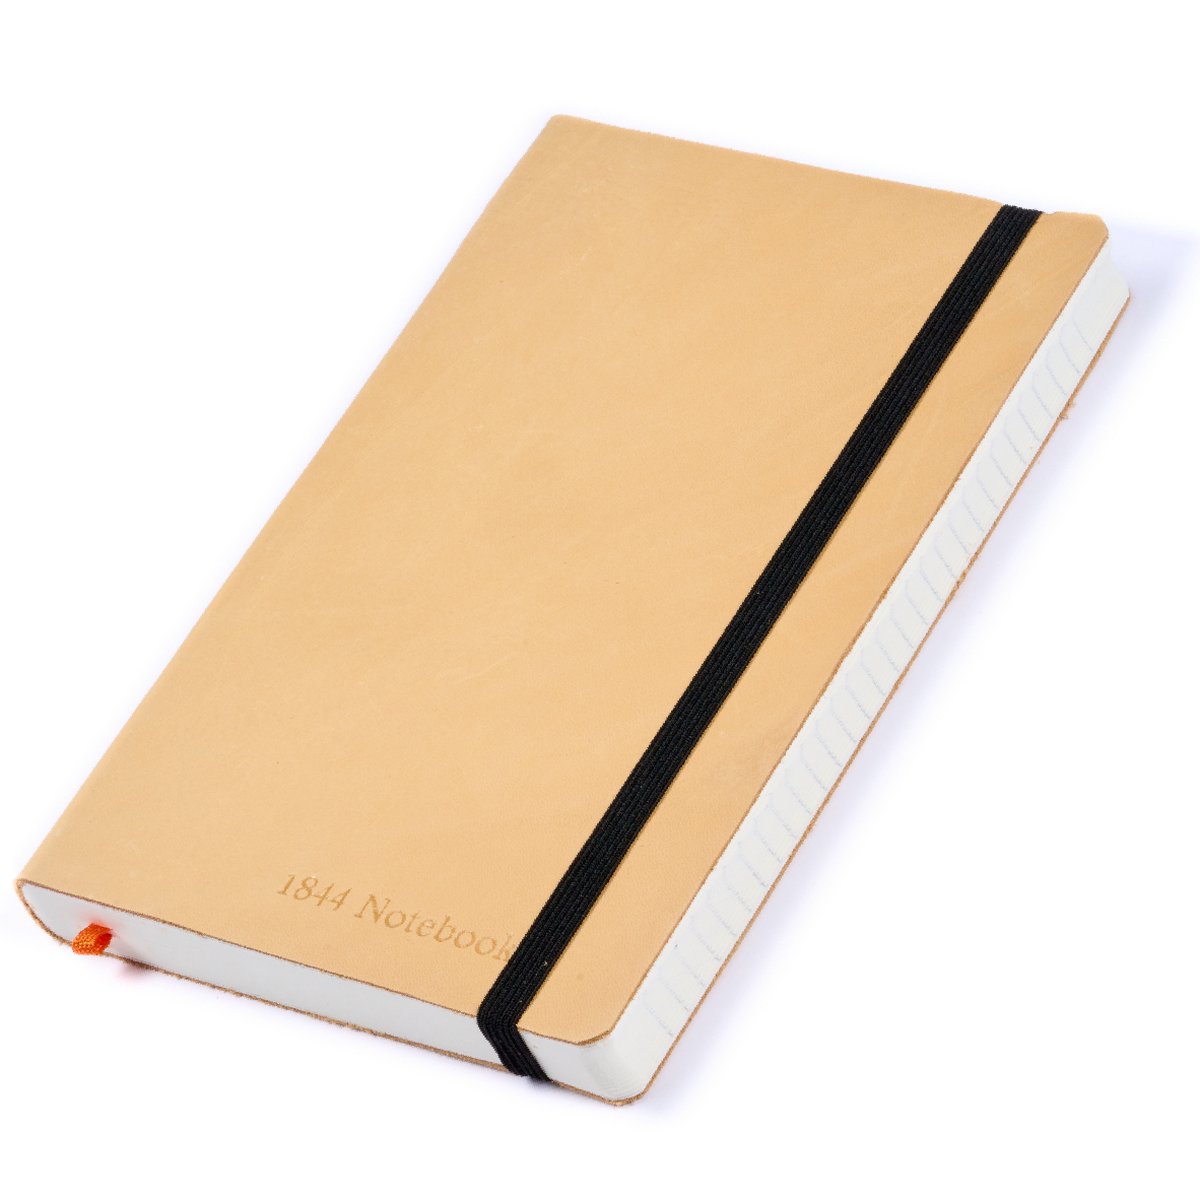 Notitieboek - Notebook A5 - Moederdag cadeau - Cadeau voor man - Notitieboekje - Handgemaakt van leer - Notebook - Notitieblok - Sand Brown - beige - 1844 Notebooks